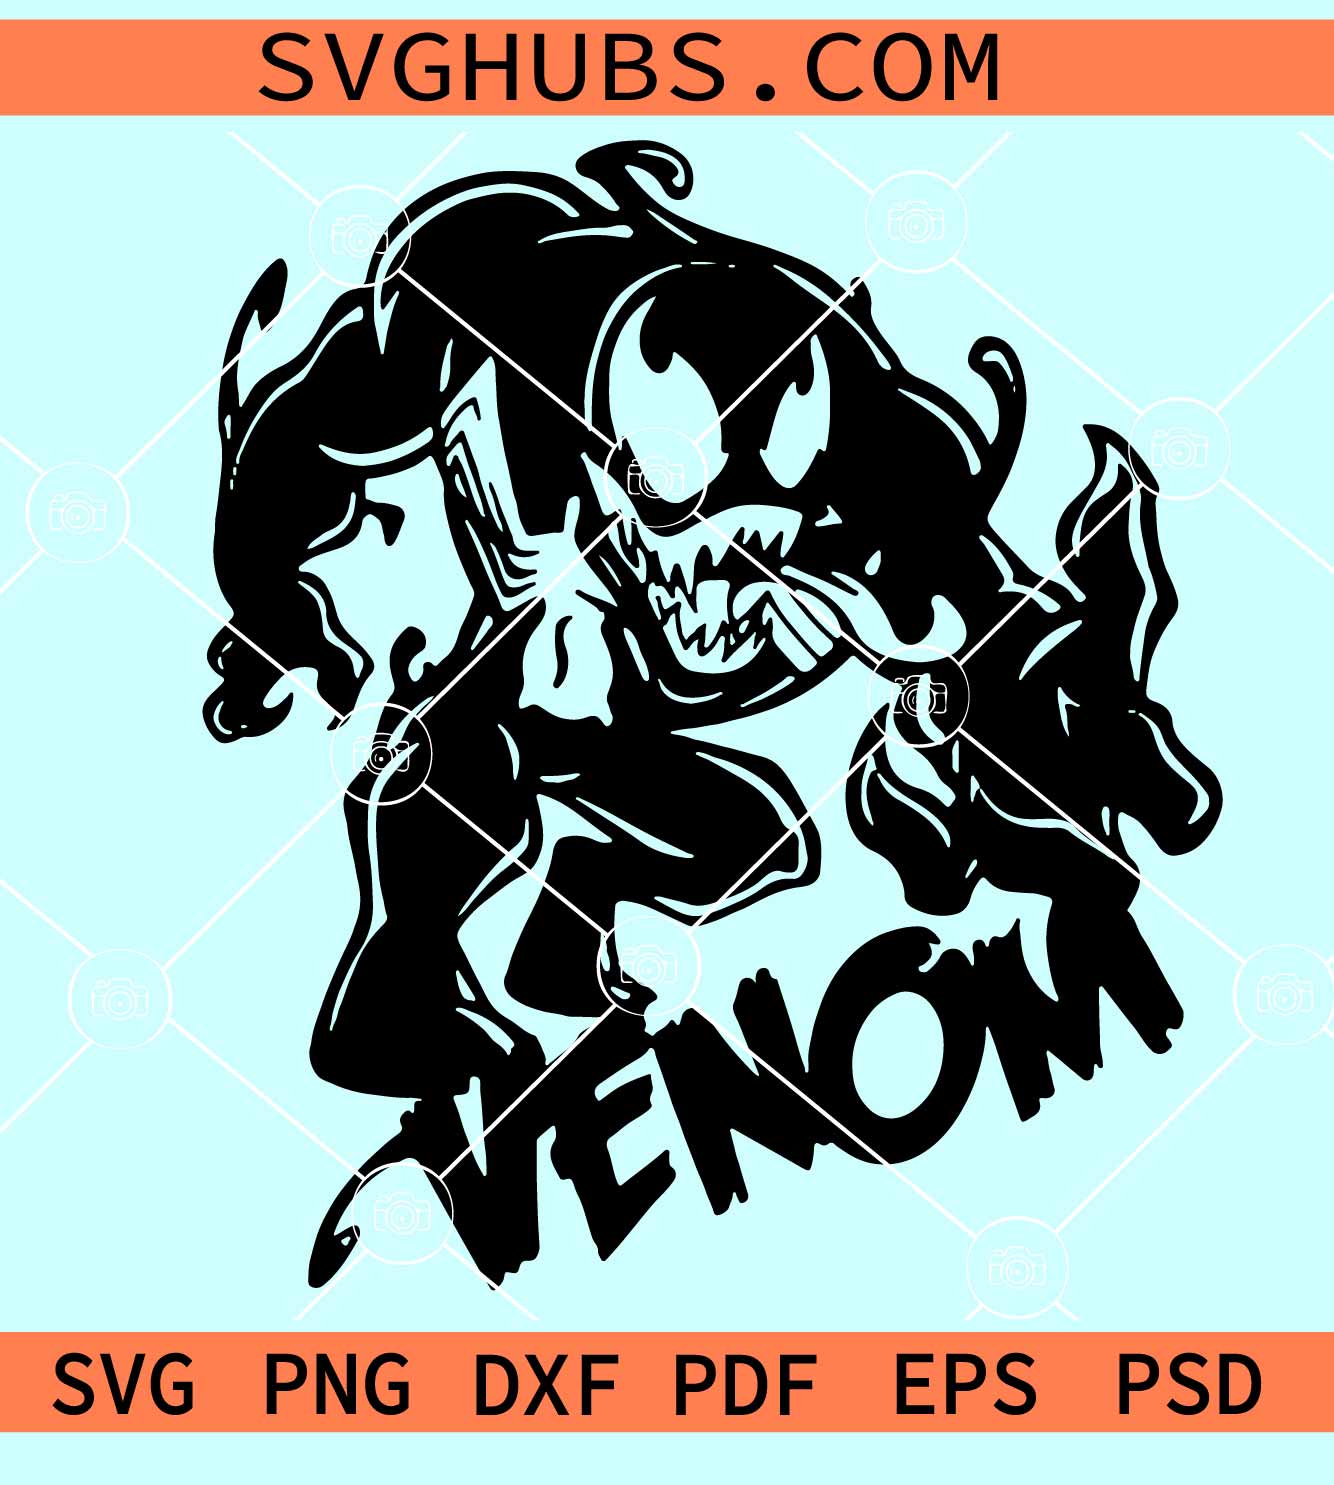 Venom Spiderman SVG, venom svg, spiderman svg, marvel svg, Spiderman Venom  SVG